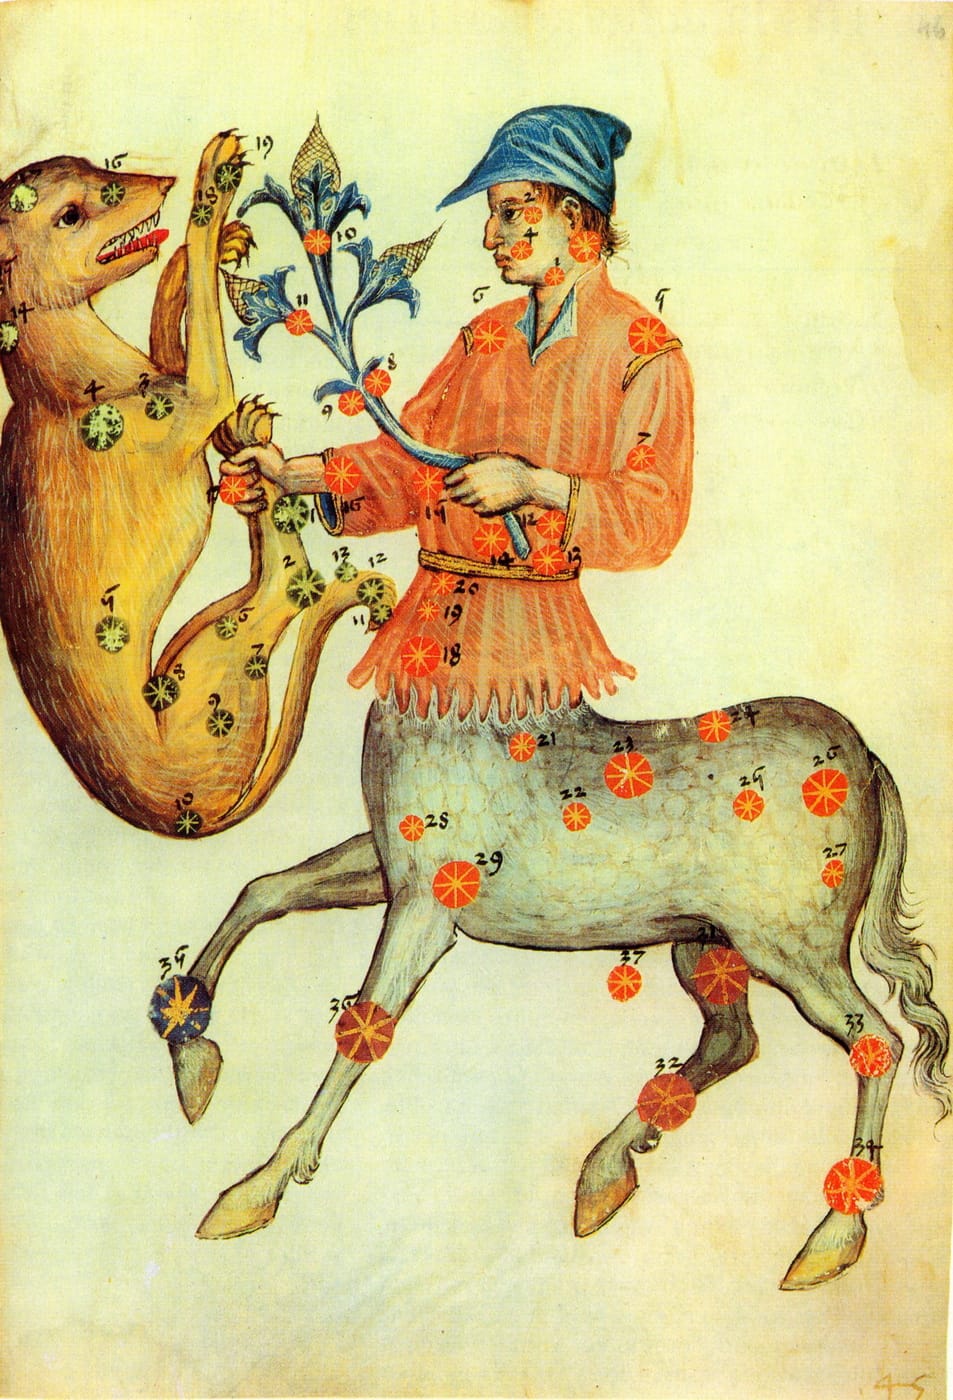 Der Kentaur hält mit seiner rechten Hand ein wildes Tier an dessen Hinterläufen, in seiner linken Hand eine Weinrebe. Mittelalterliche Illustration nach einer Beschreibung des Astronomen as-Sufi